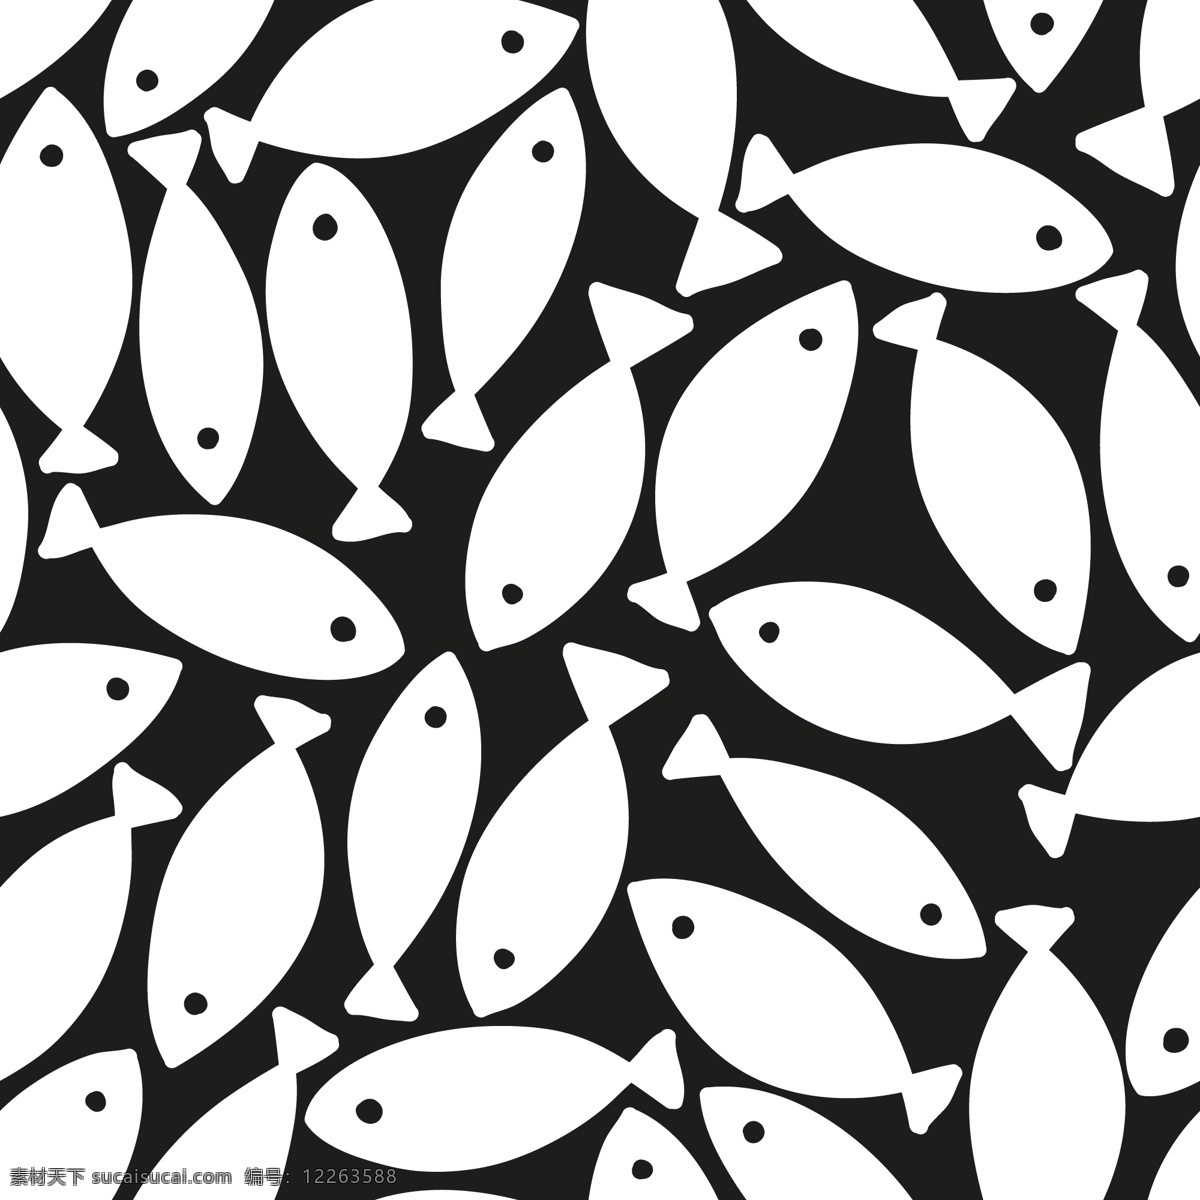 鱼 鱼剪影 海鲜 海鲜剪影 黑白 黑白剪影 矢量 矢量鱼 分层